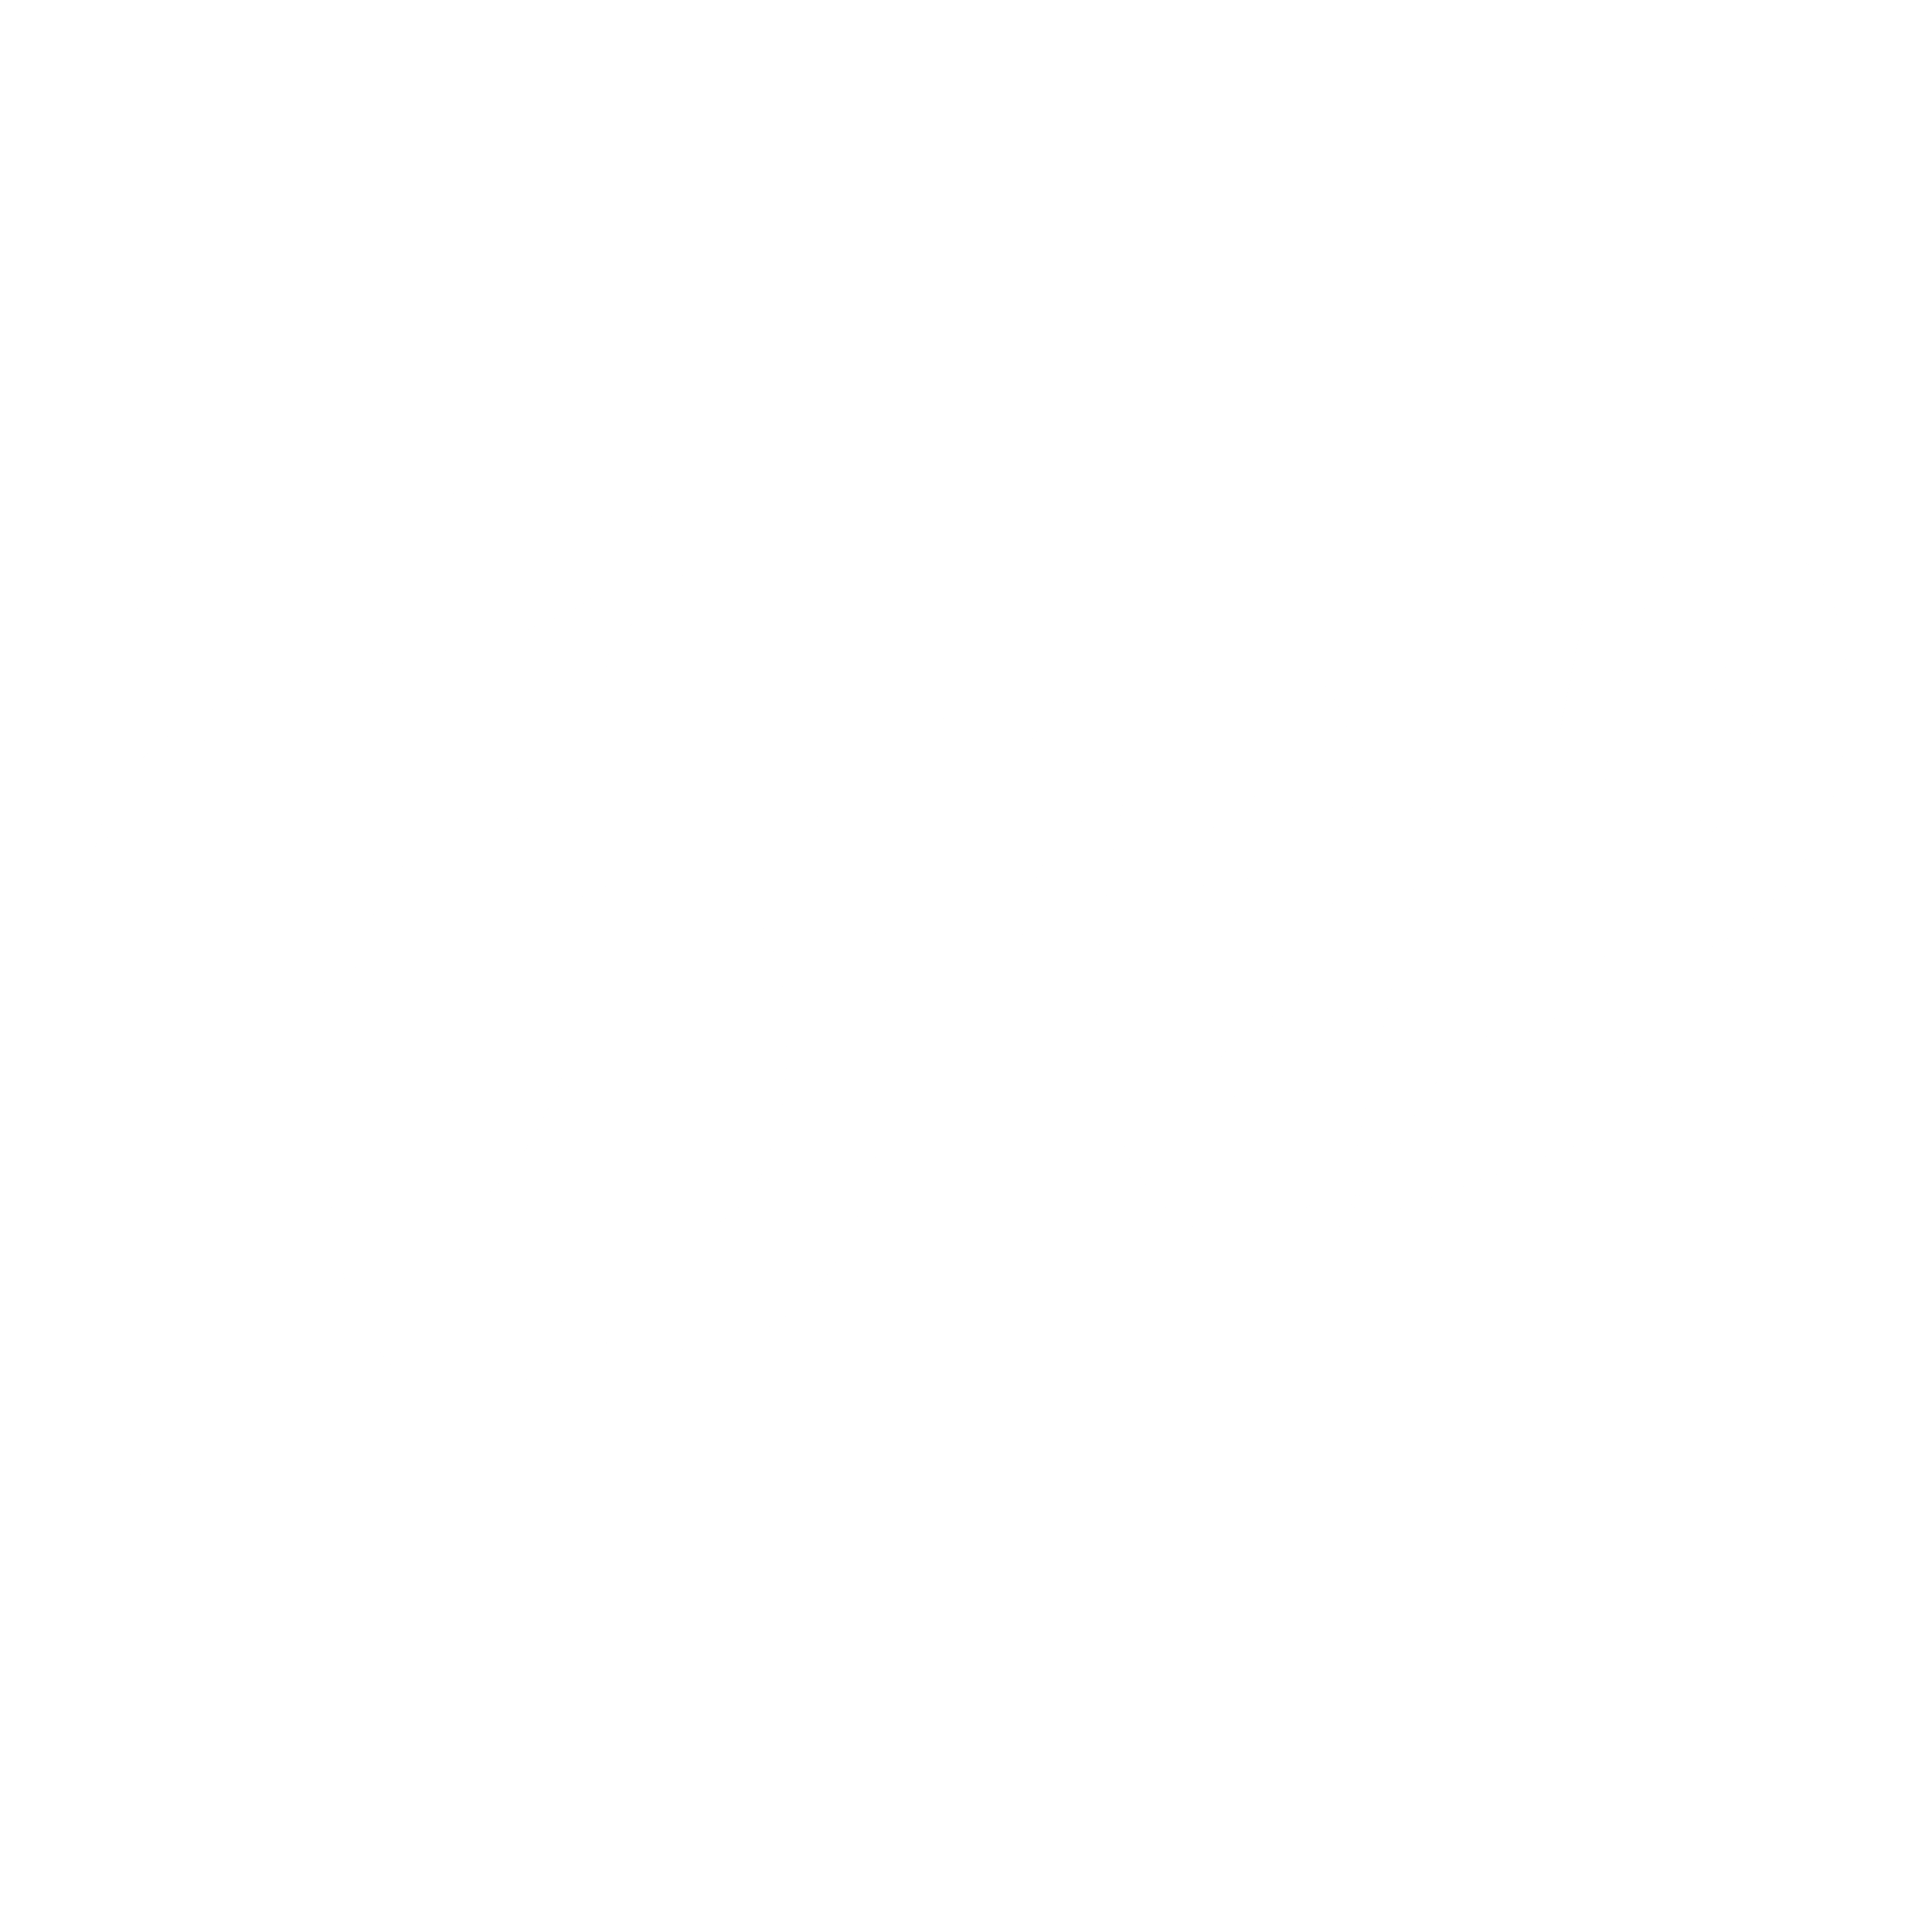 Febreze Logo - Febreze Logo PNG Transparent & SVG Vector